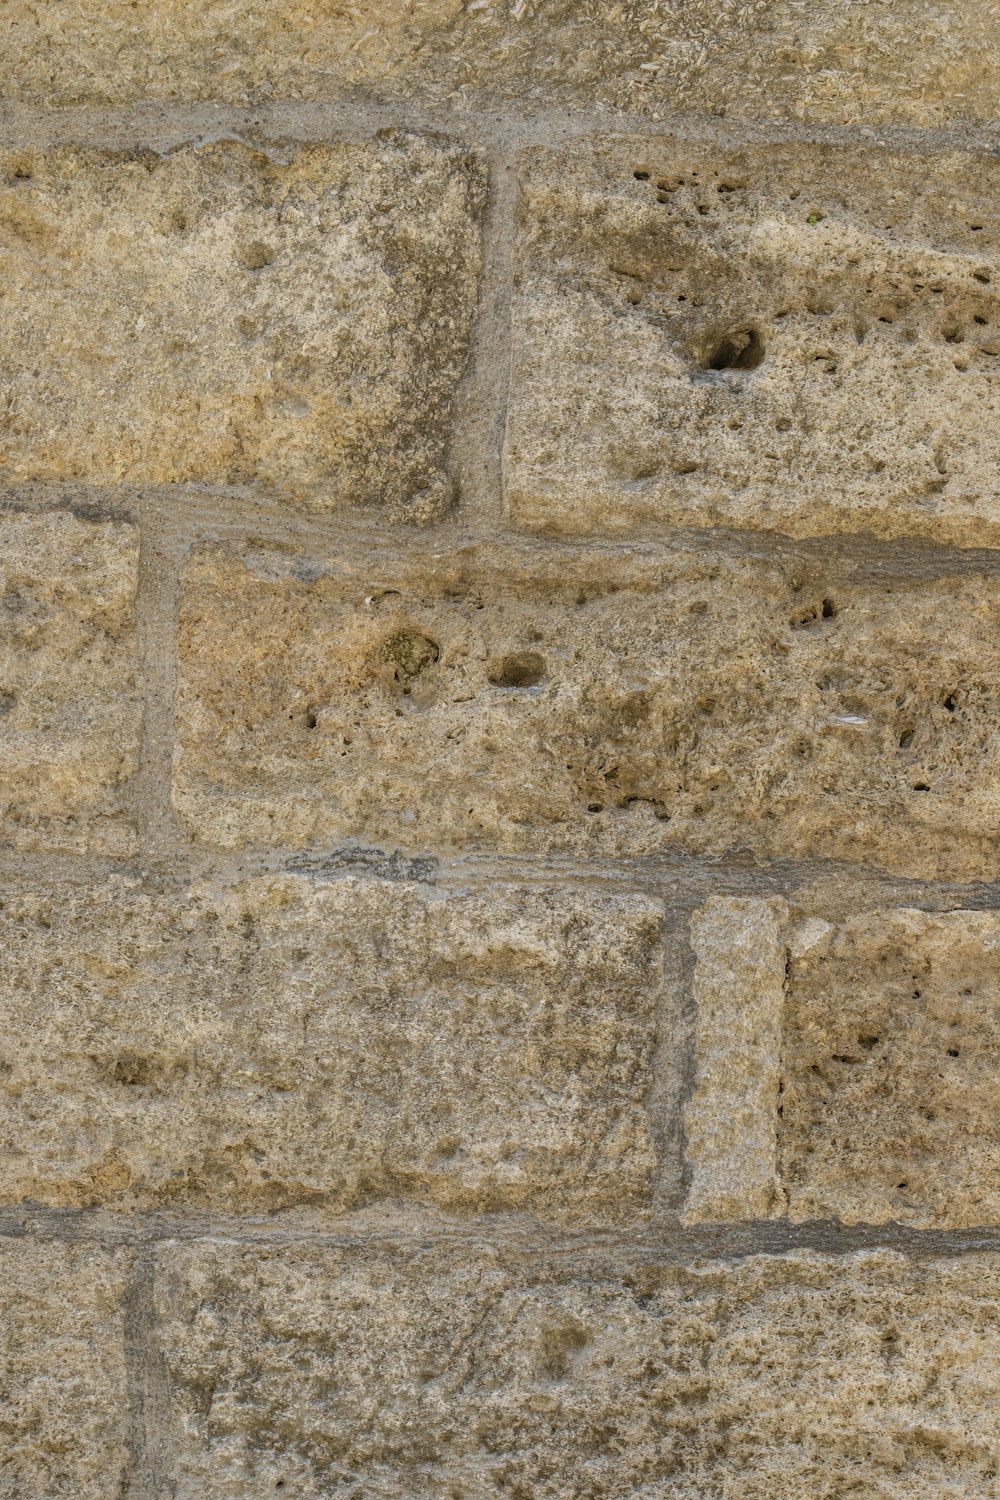 Un pájaro está posado en una pared de ladrillo